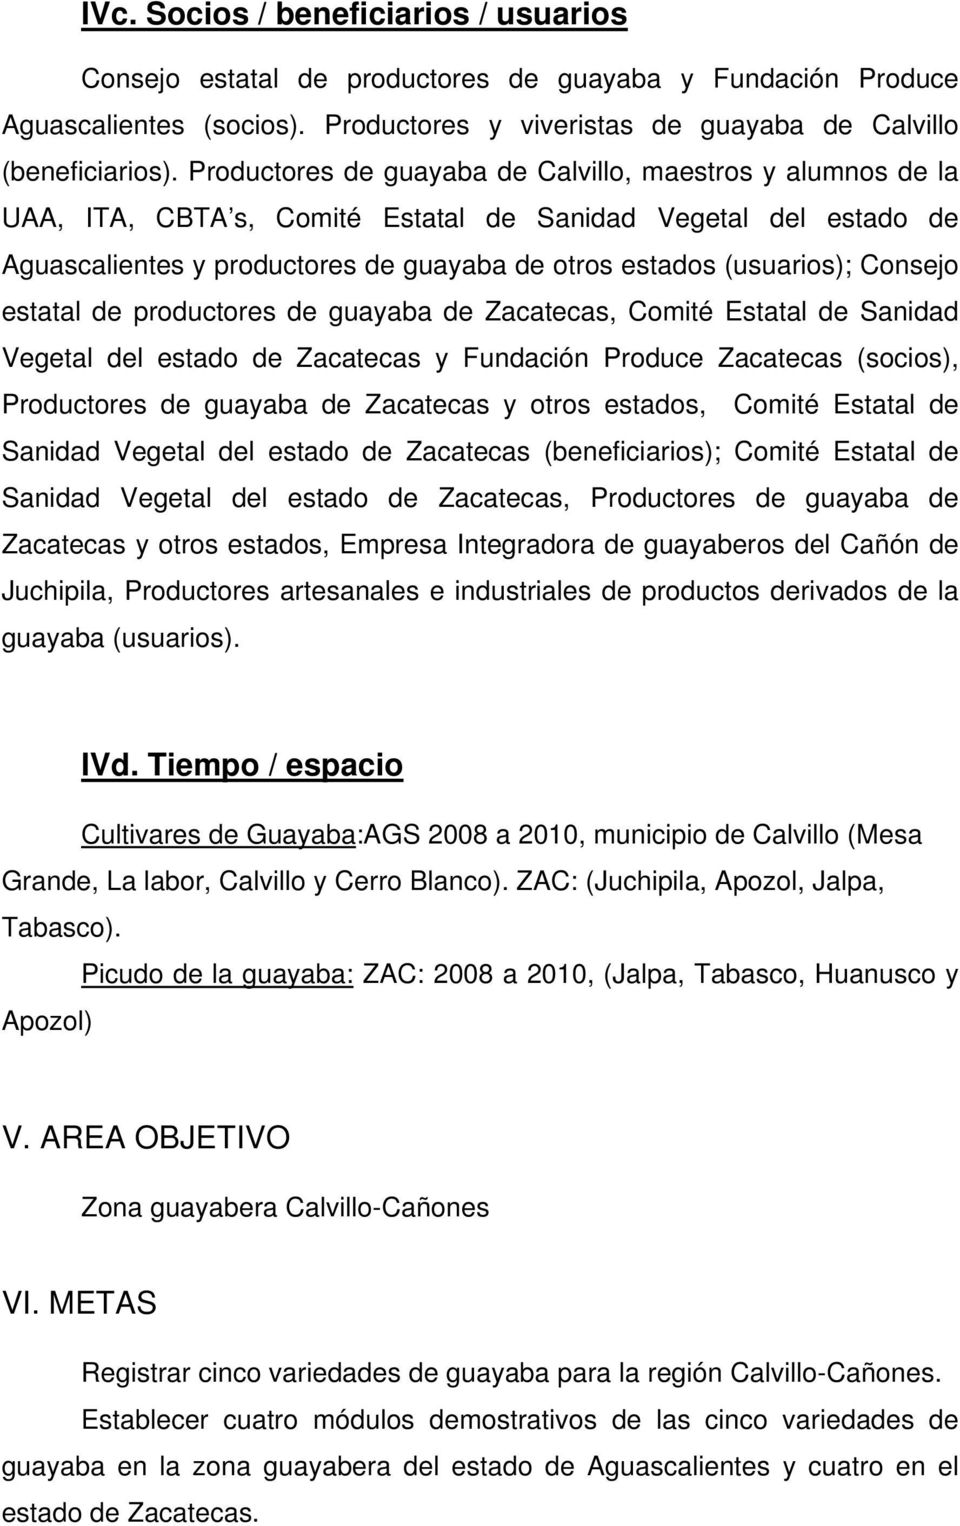 Consejo estatal de productores de guayaba de Zacatecas, Comité Estatal de Sanidad Vegetal del estado de Zacatecas y Fundación Produce Zacatecas (socios), Productores de guayaba de Zacatecas y otros